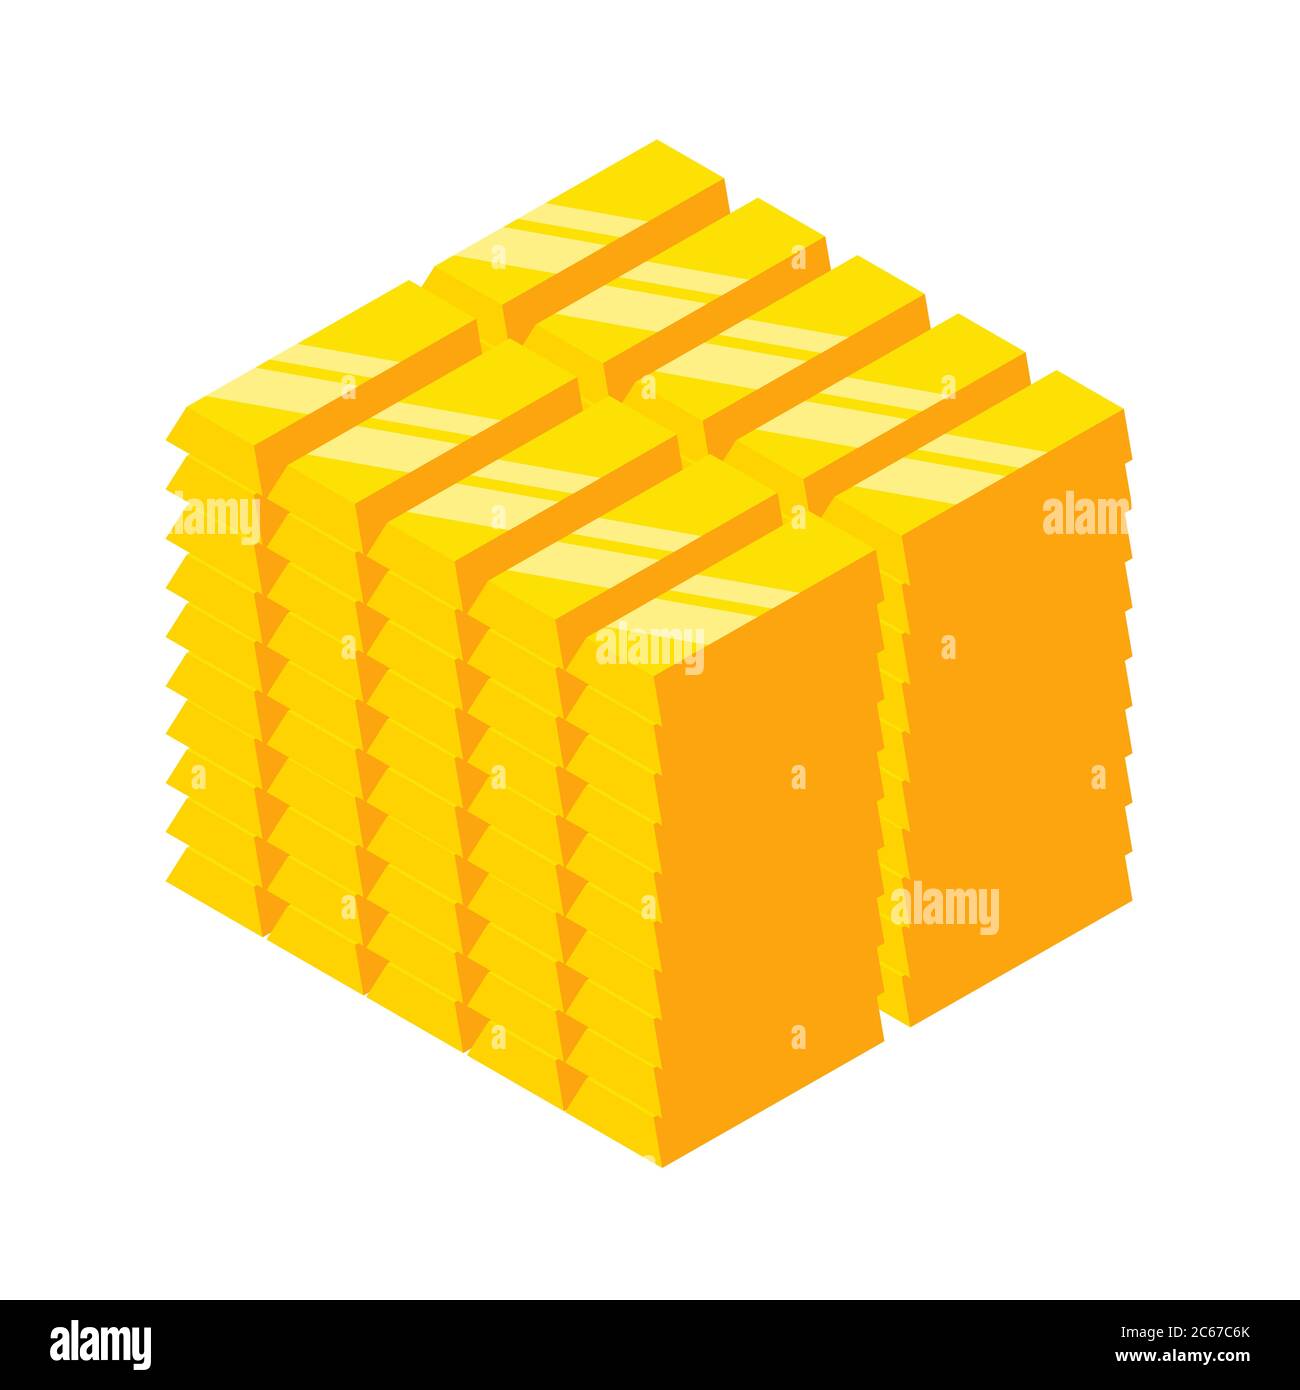 Blocco delle barre dorate isometriche. Barre d'oro piegate su cubo. Illustrazione del vettore EPS 10 Illustrazione Vettoriale